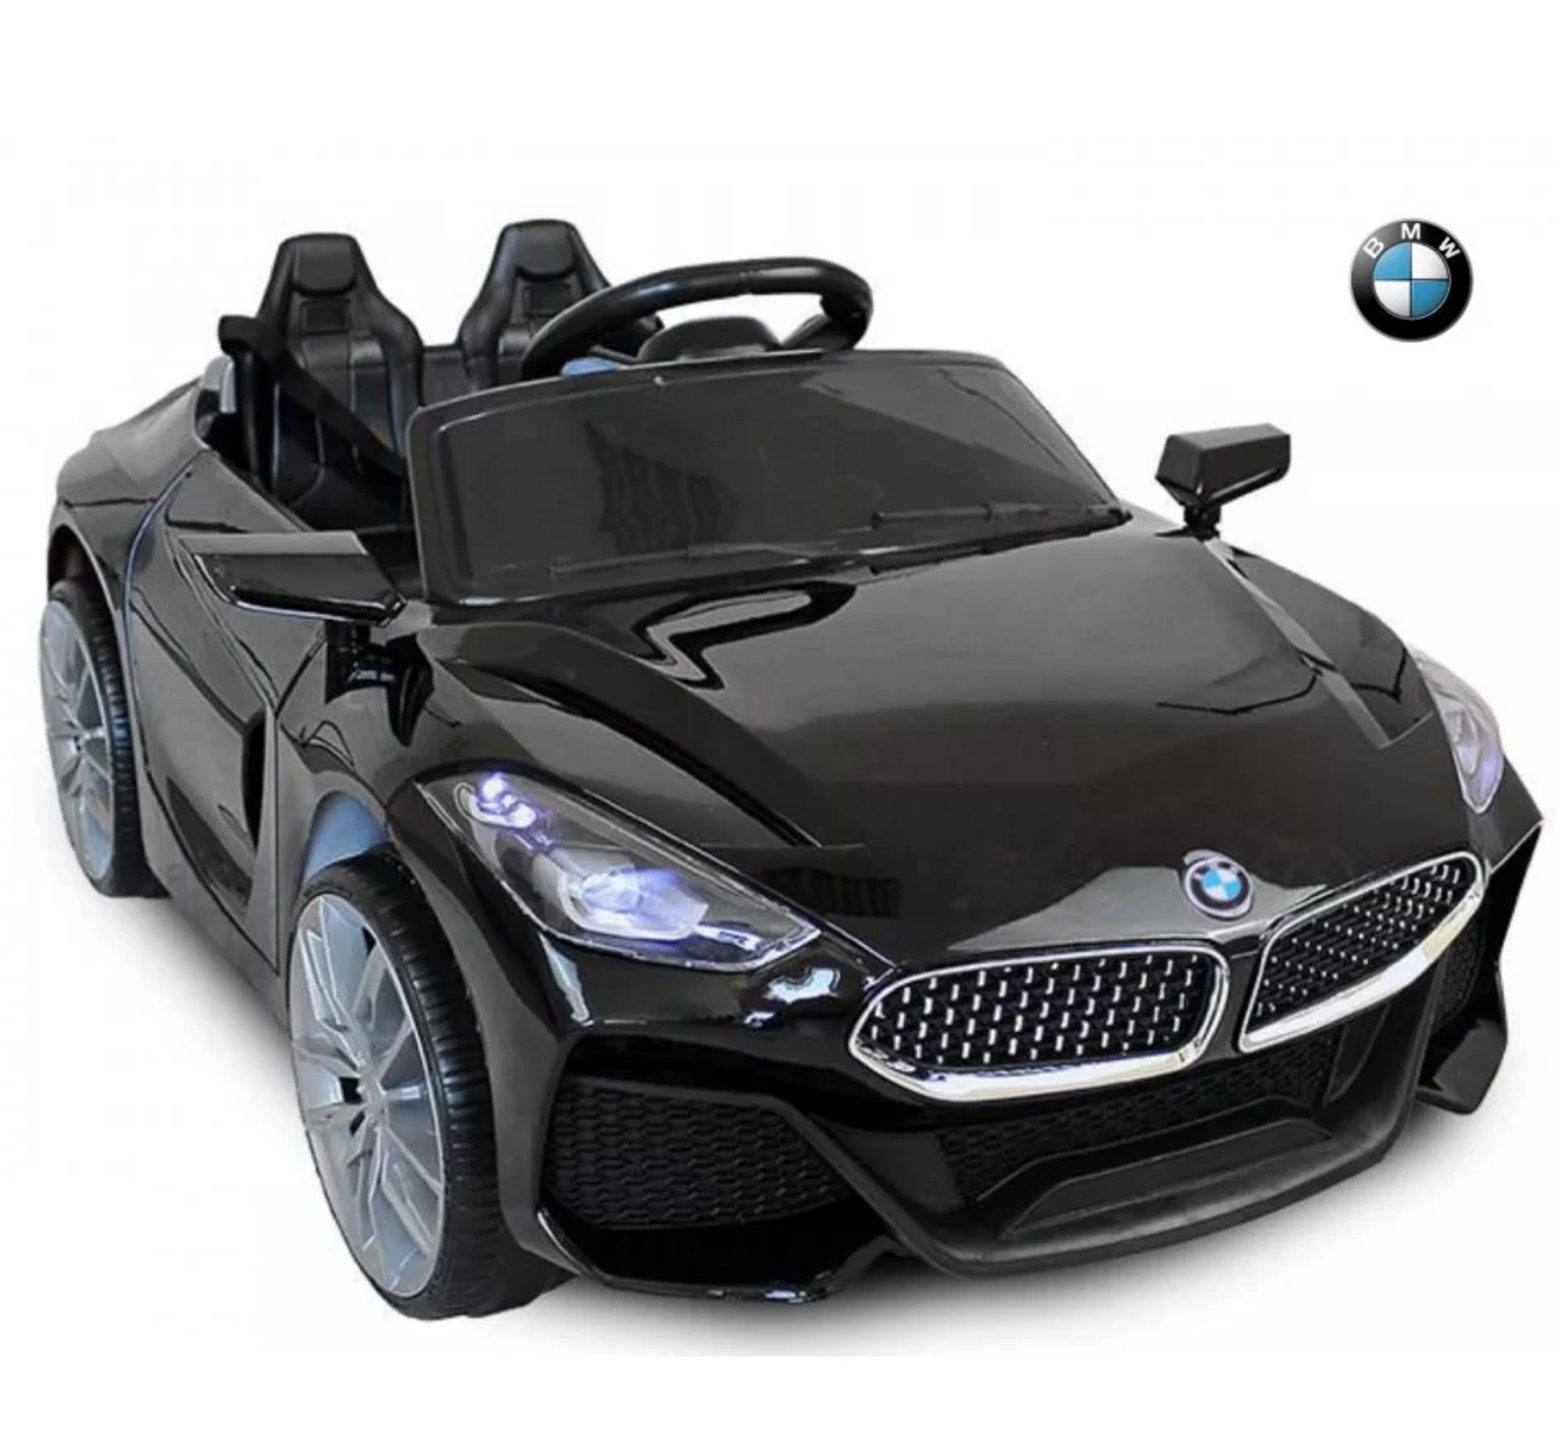 Ηλεκτροκίνητο Παιδικό Αυτοκίνητο Licensed BMW Z4 12V μαύρο χρώμα